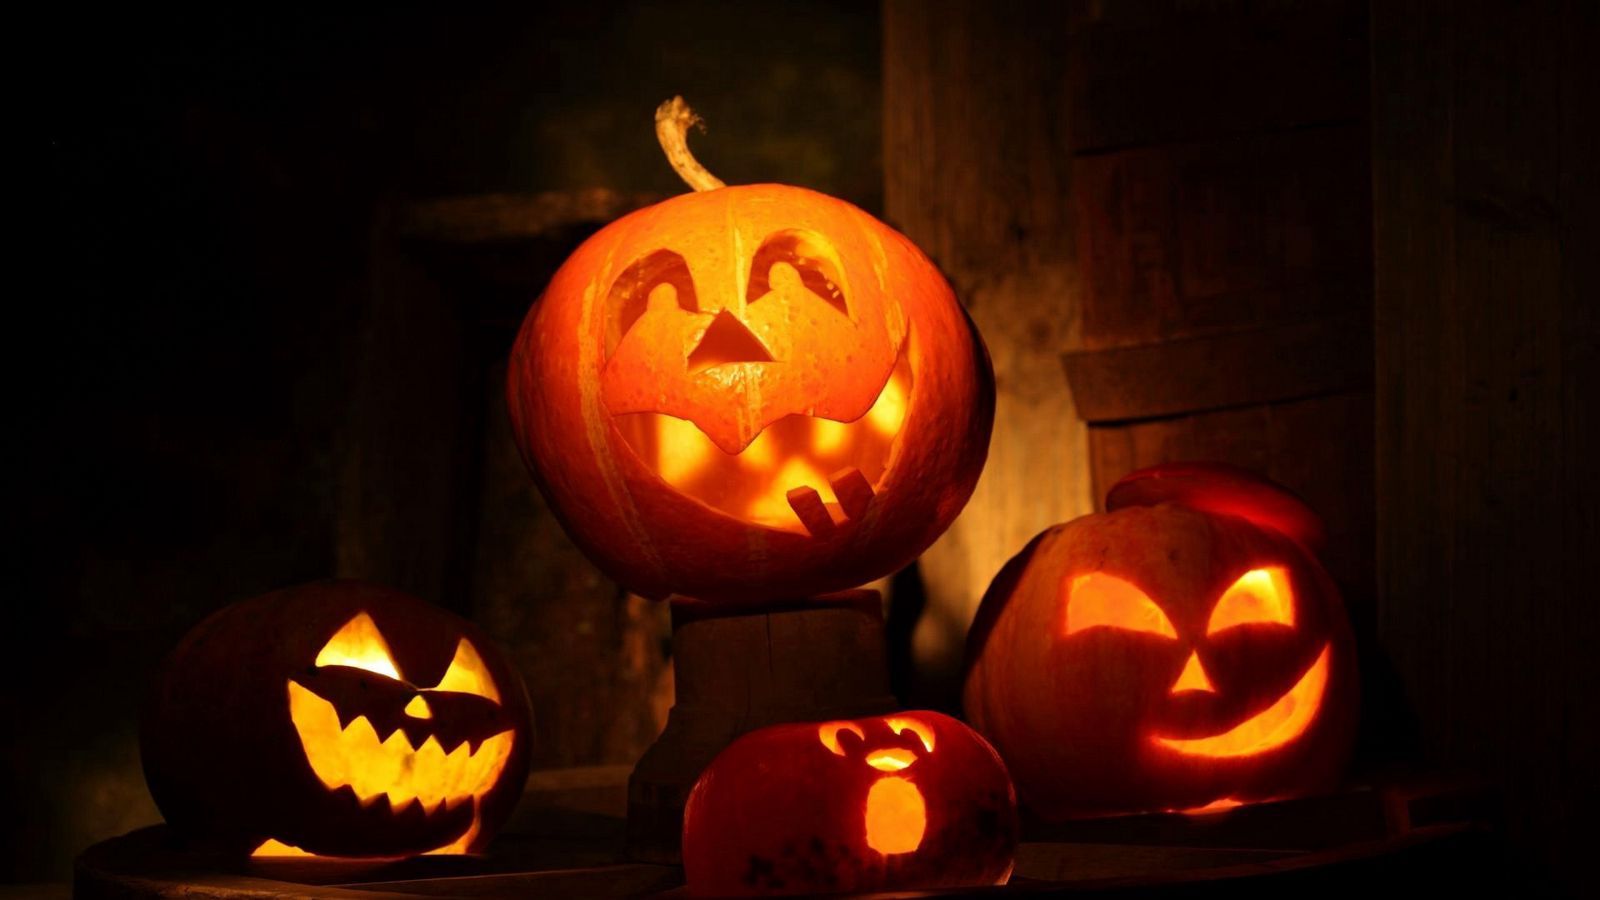 Download wallpaper 1600x900 halloween, holiday, pumpkin, fear, night widescreen 16:9 HD background